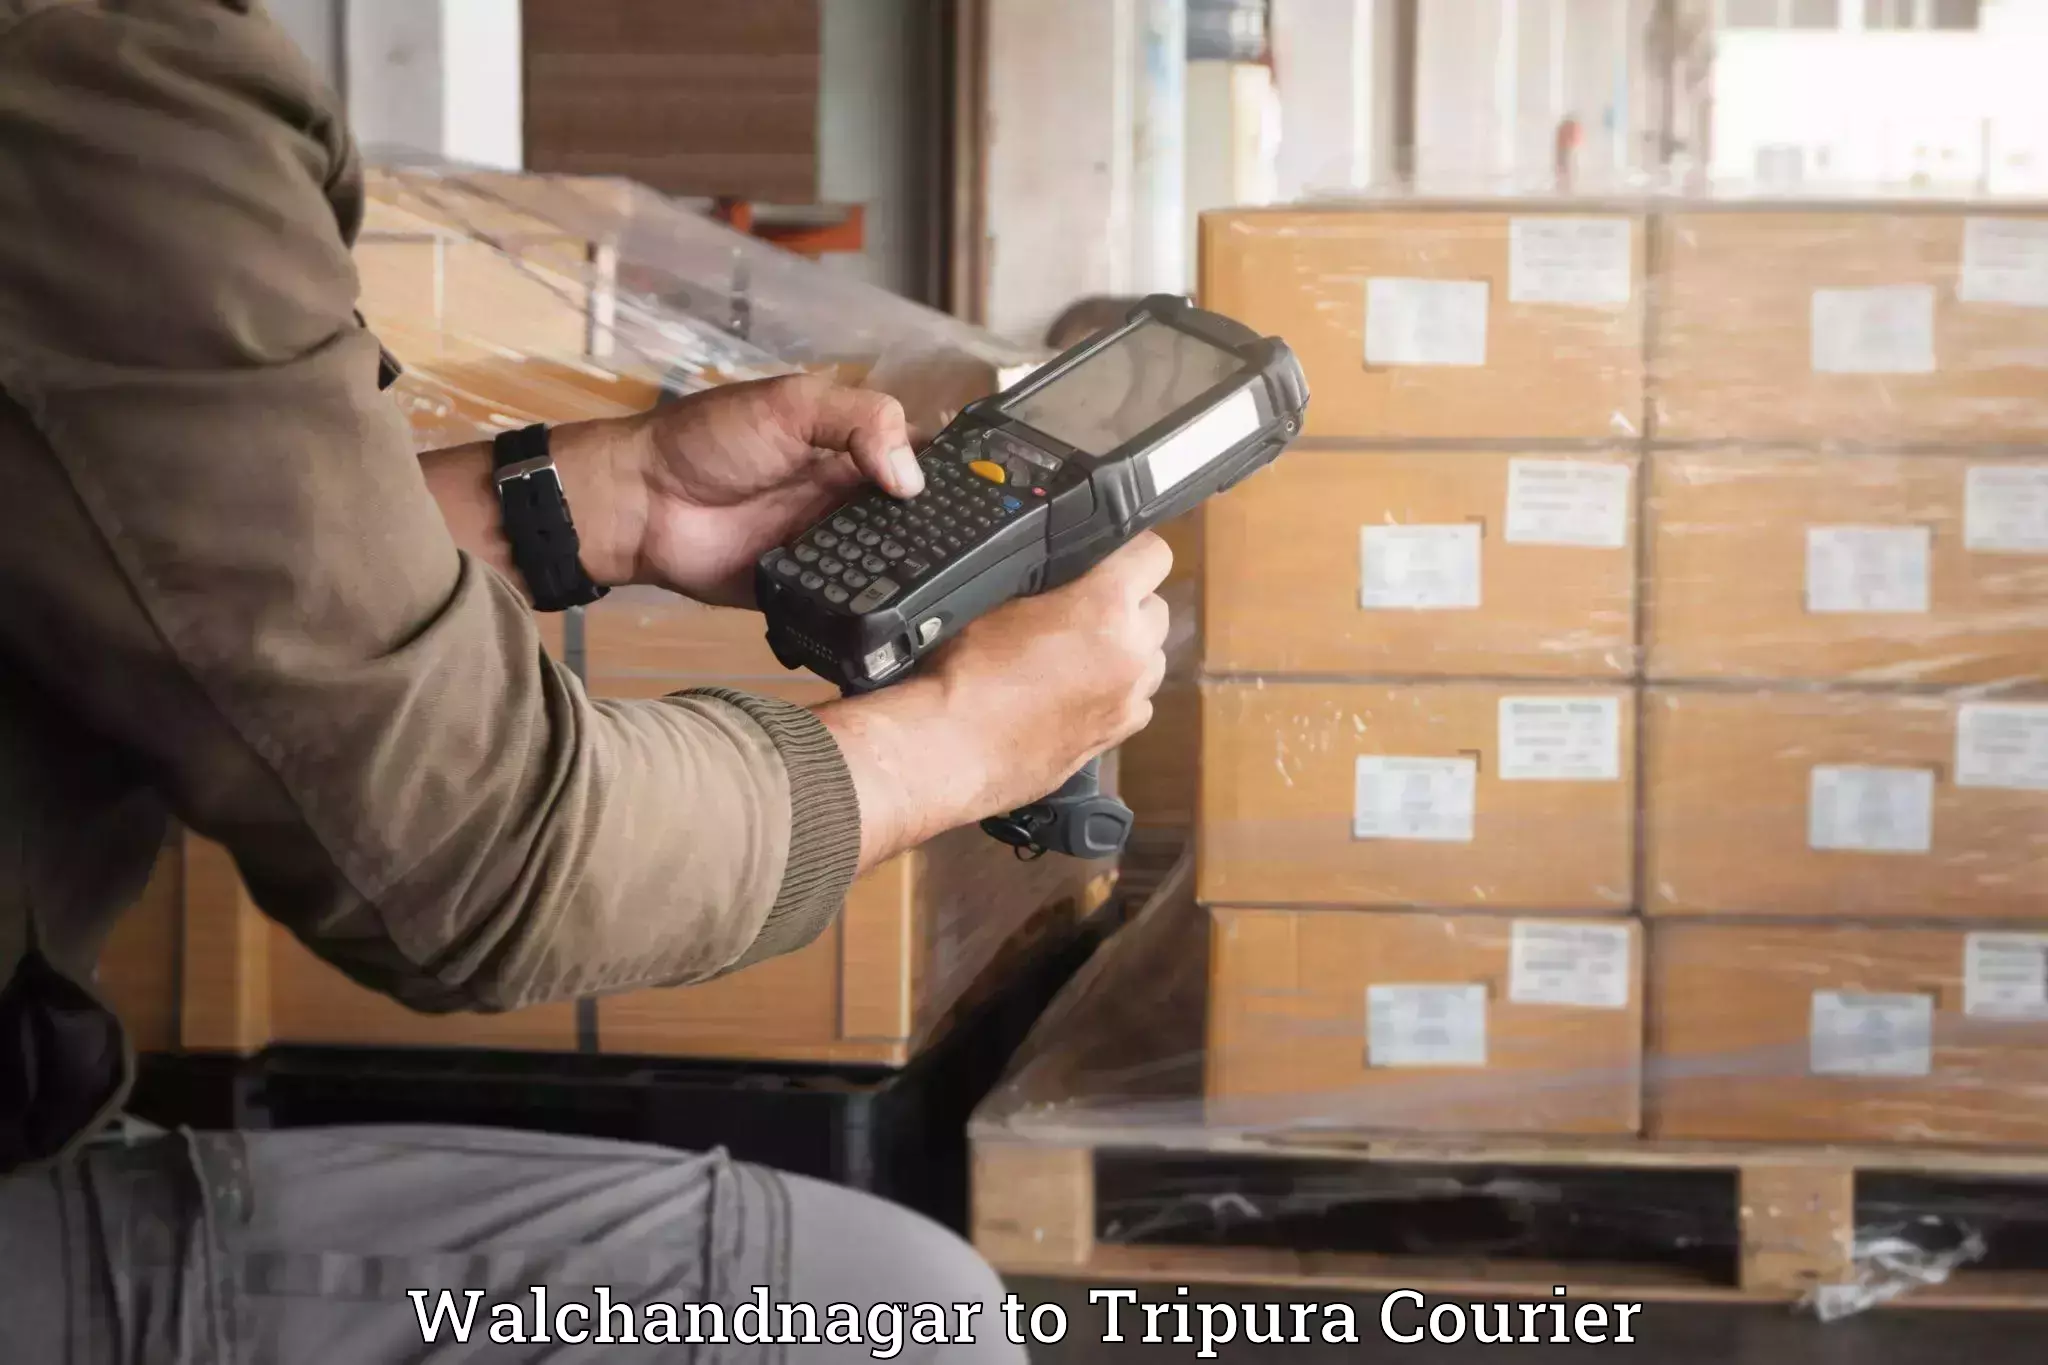 Luggage transport company Walchandnagar to West Tripura